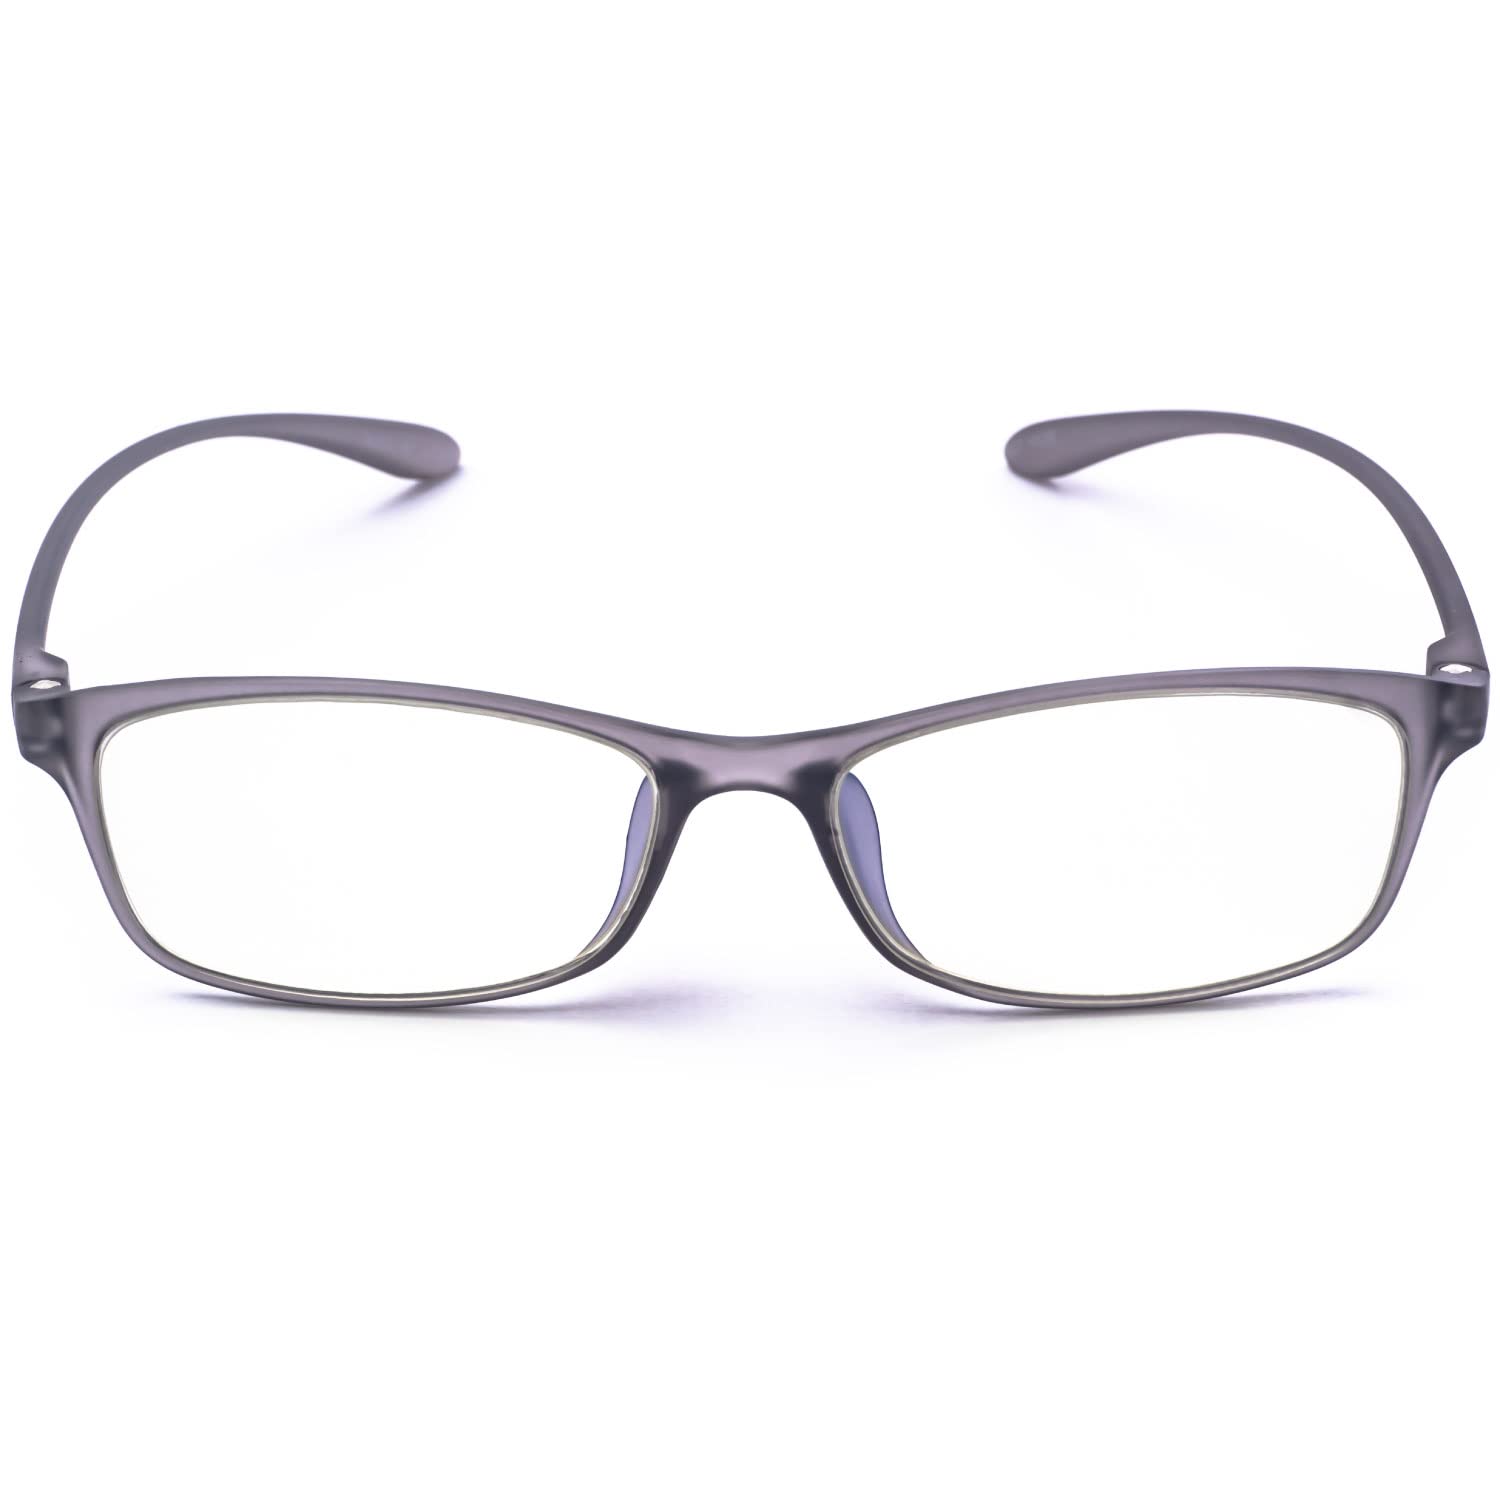 MIDI ミディ 老眼鏡 レディース メンズ おしゃれ 1.0 1.5 2.0 2.5 3.0 ブルーライト ブルーライトカット かっこいい お洒落 紫外線カット